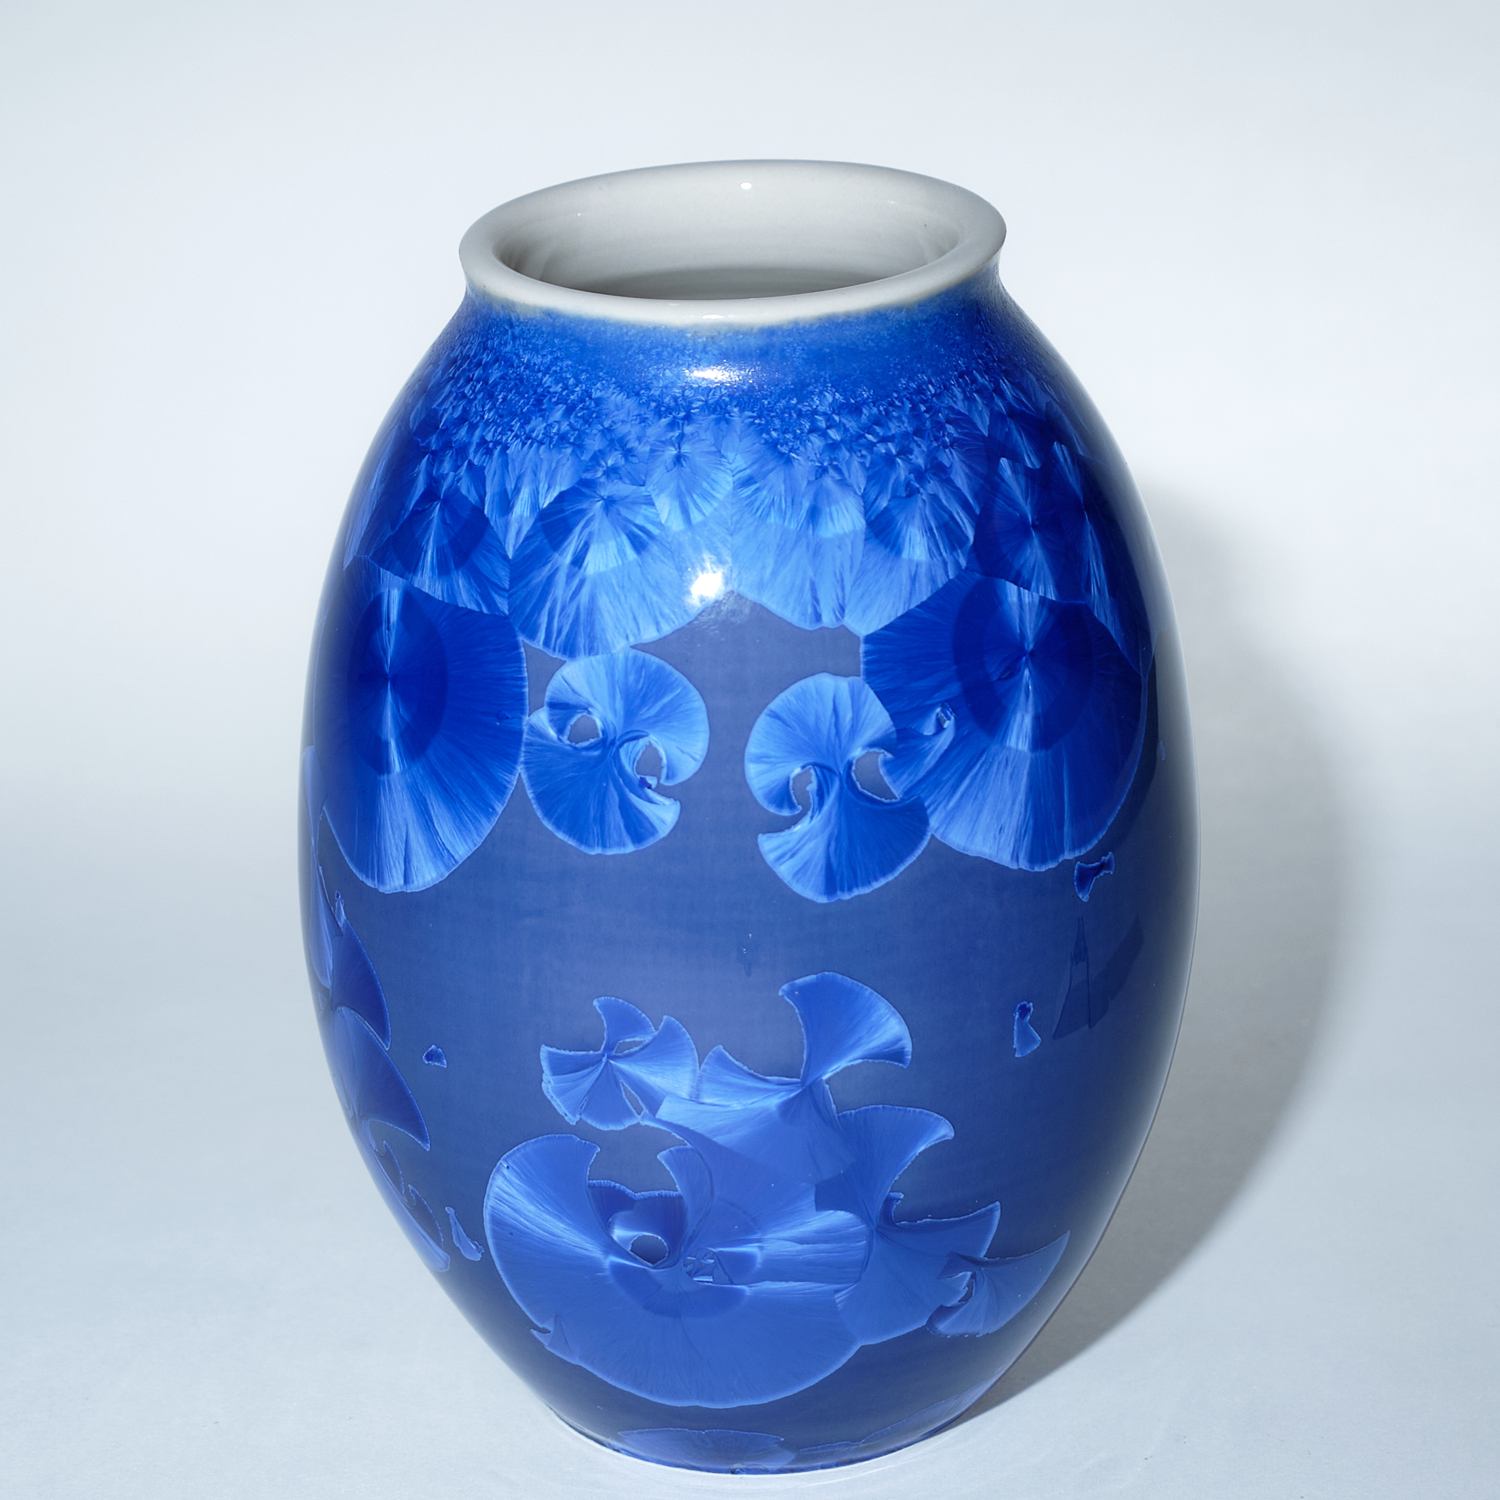 Yumiko Katsuya: Royal Blue Oval Vase Product Image 1 of 1